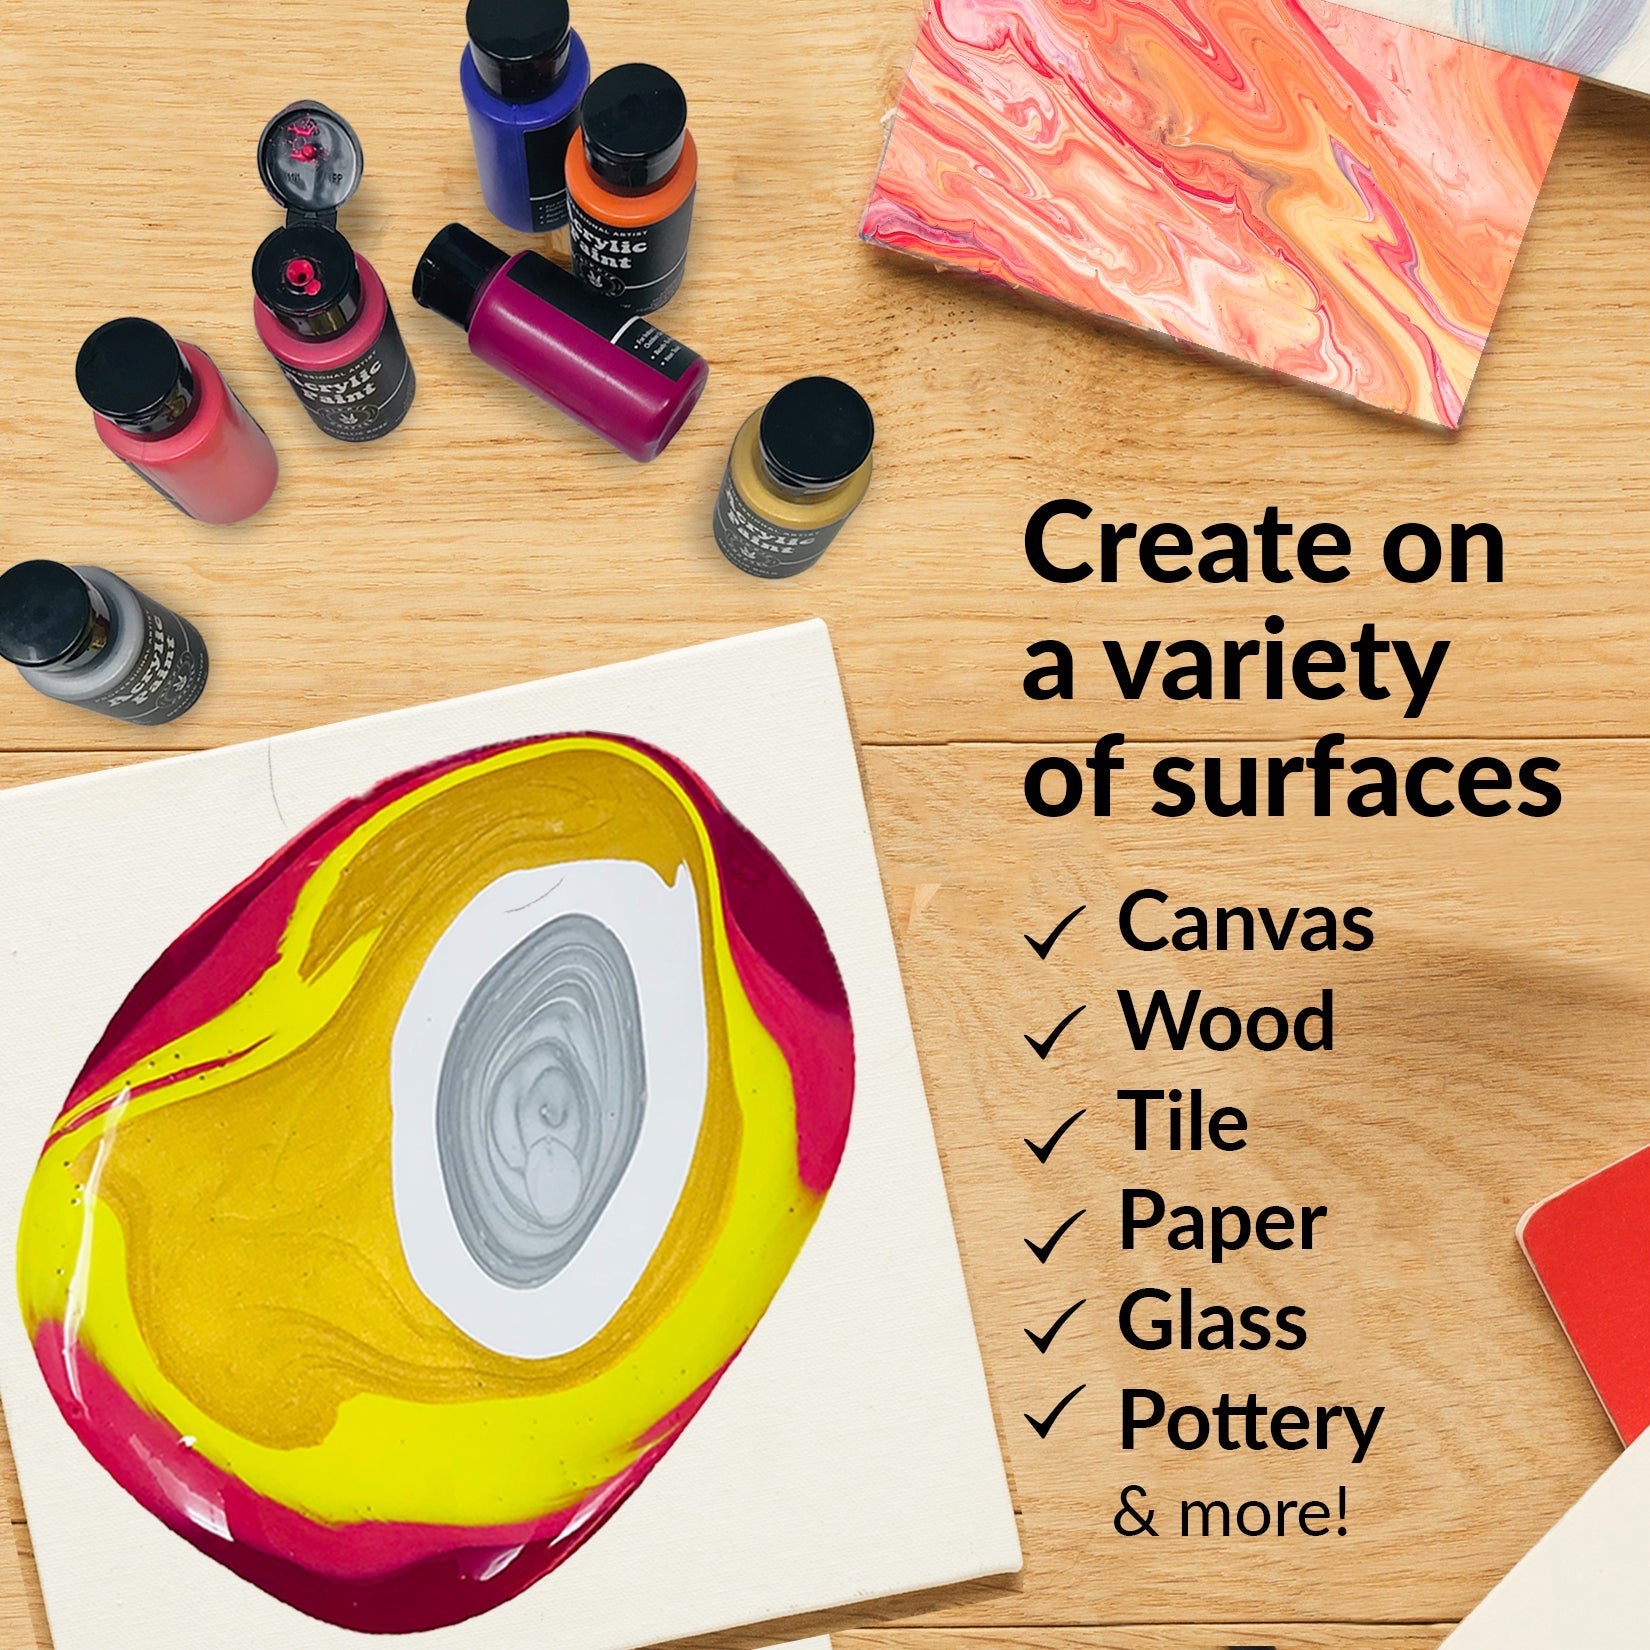 Fluid Pour Painting Kit Acrylic Pour Fluid Painting Art Kit Craft Box DIY  Fluid Painting Kit Pastel Painting Kit 